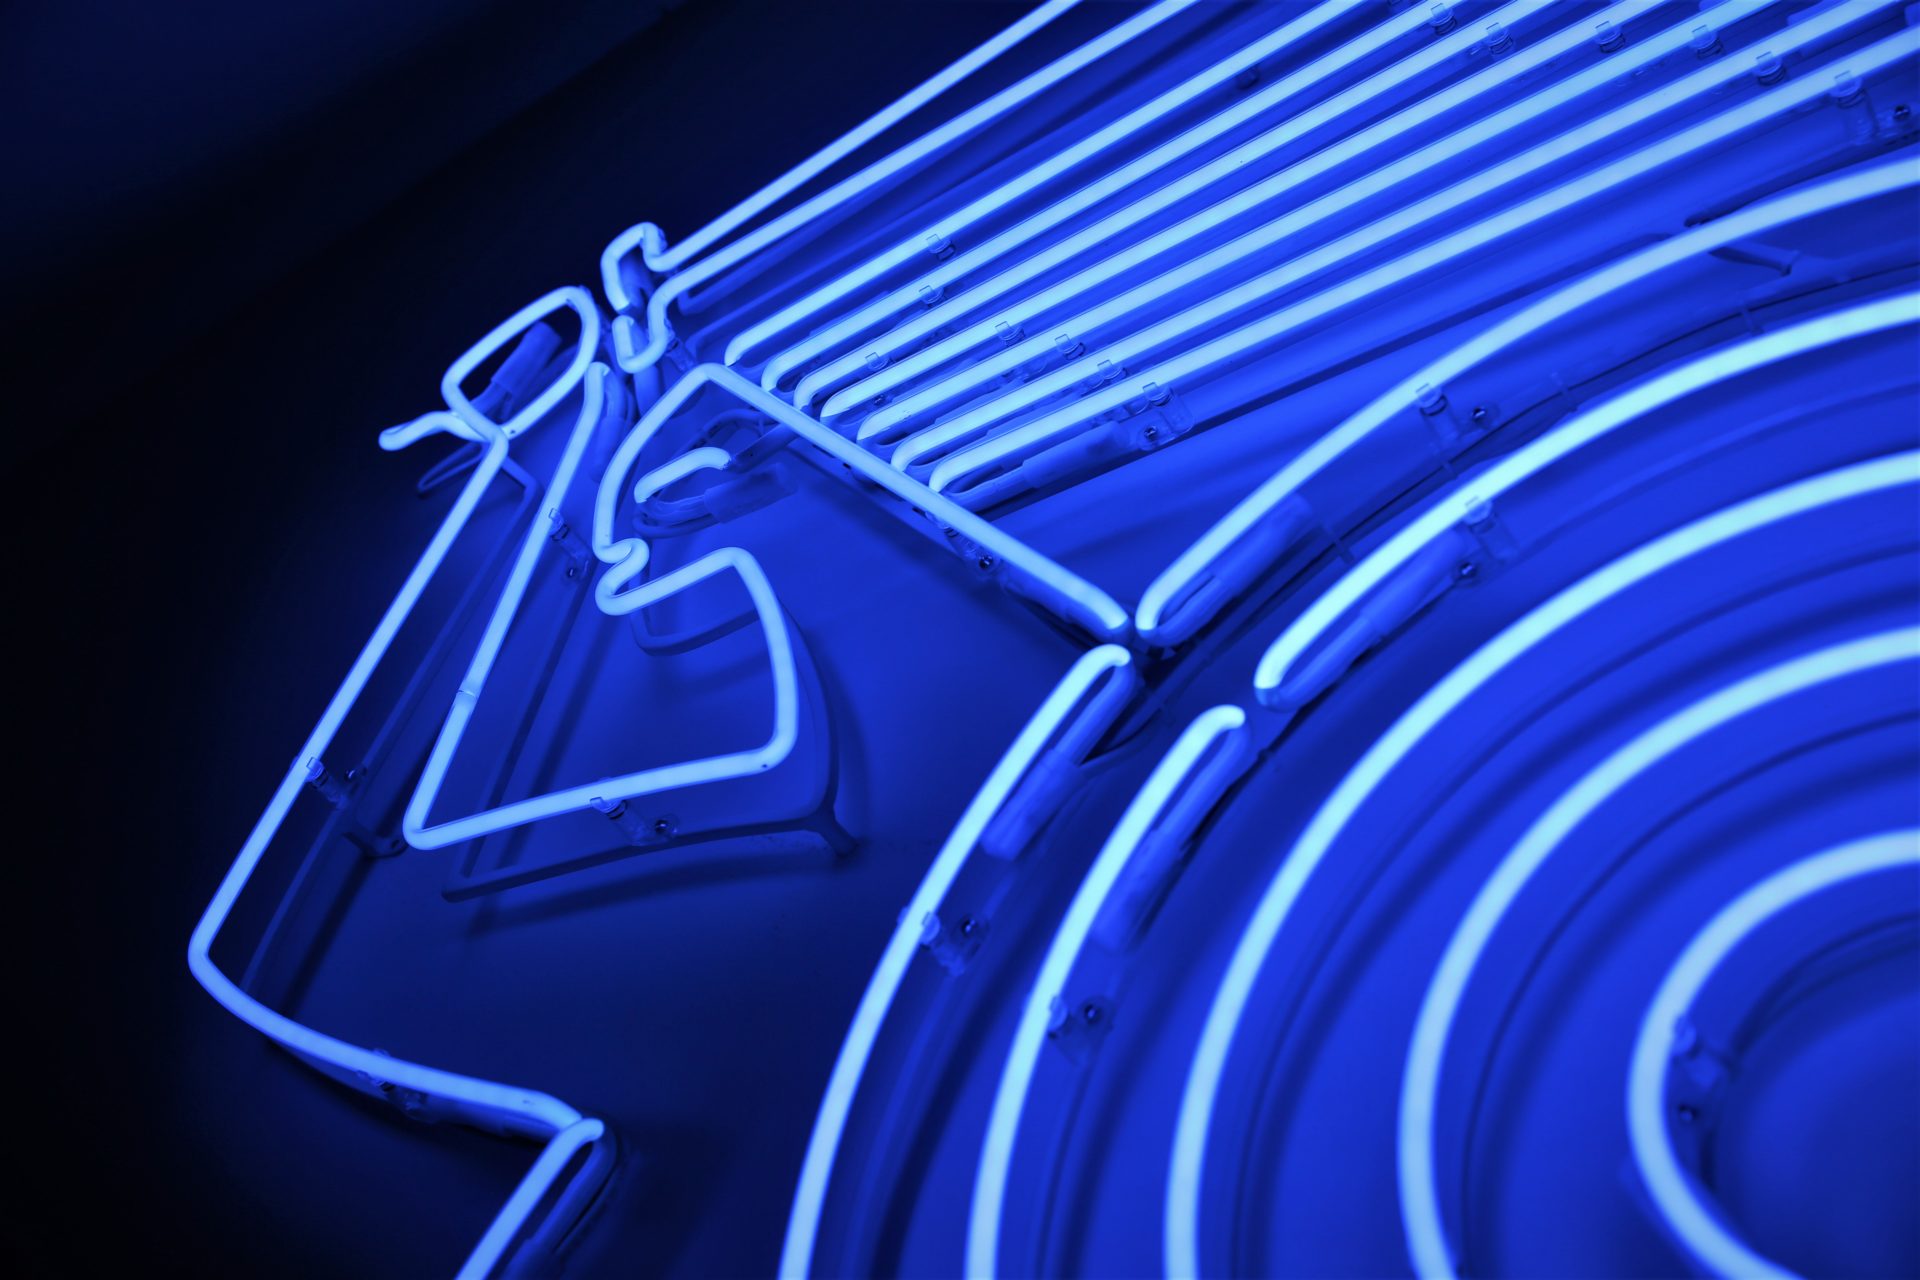 zdjęcie niebieskiego neonu w kształcie syreny